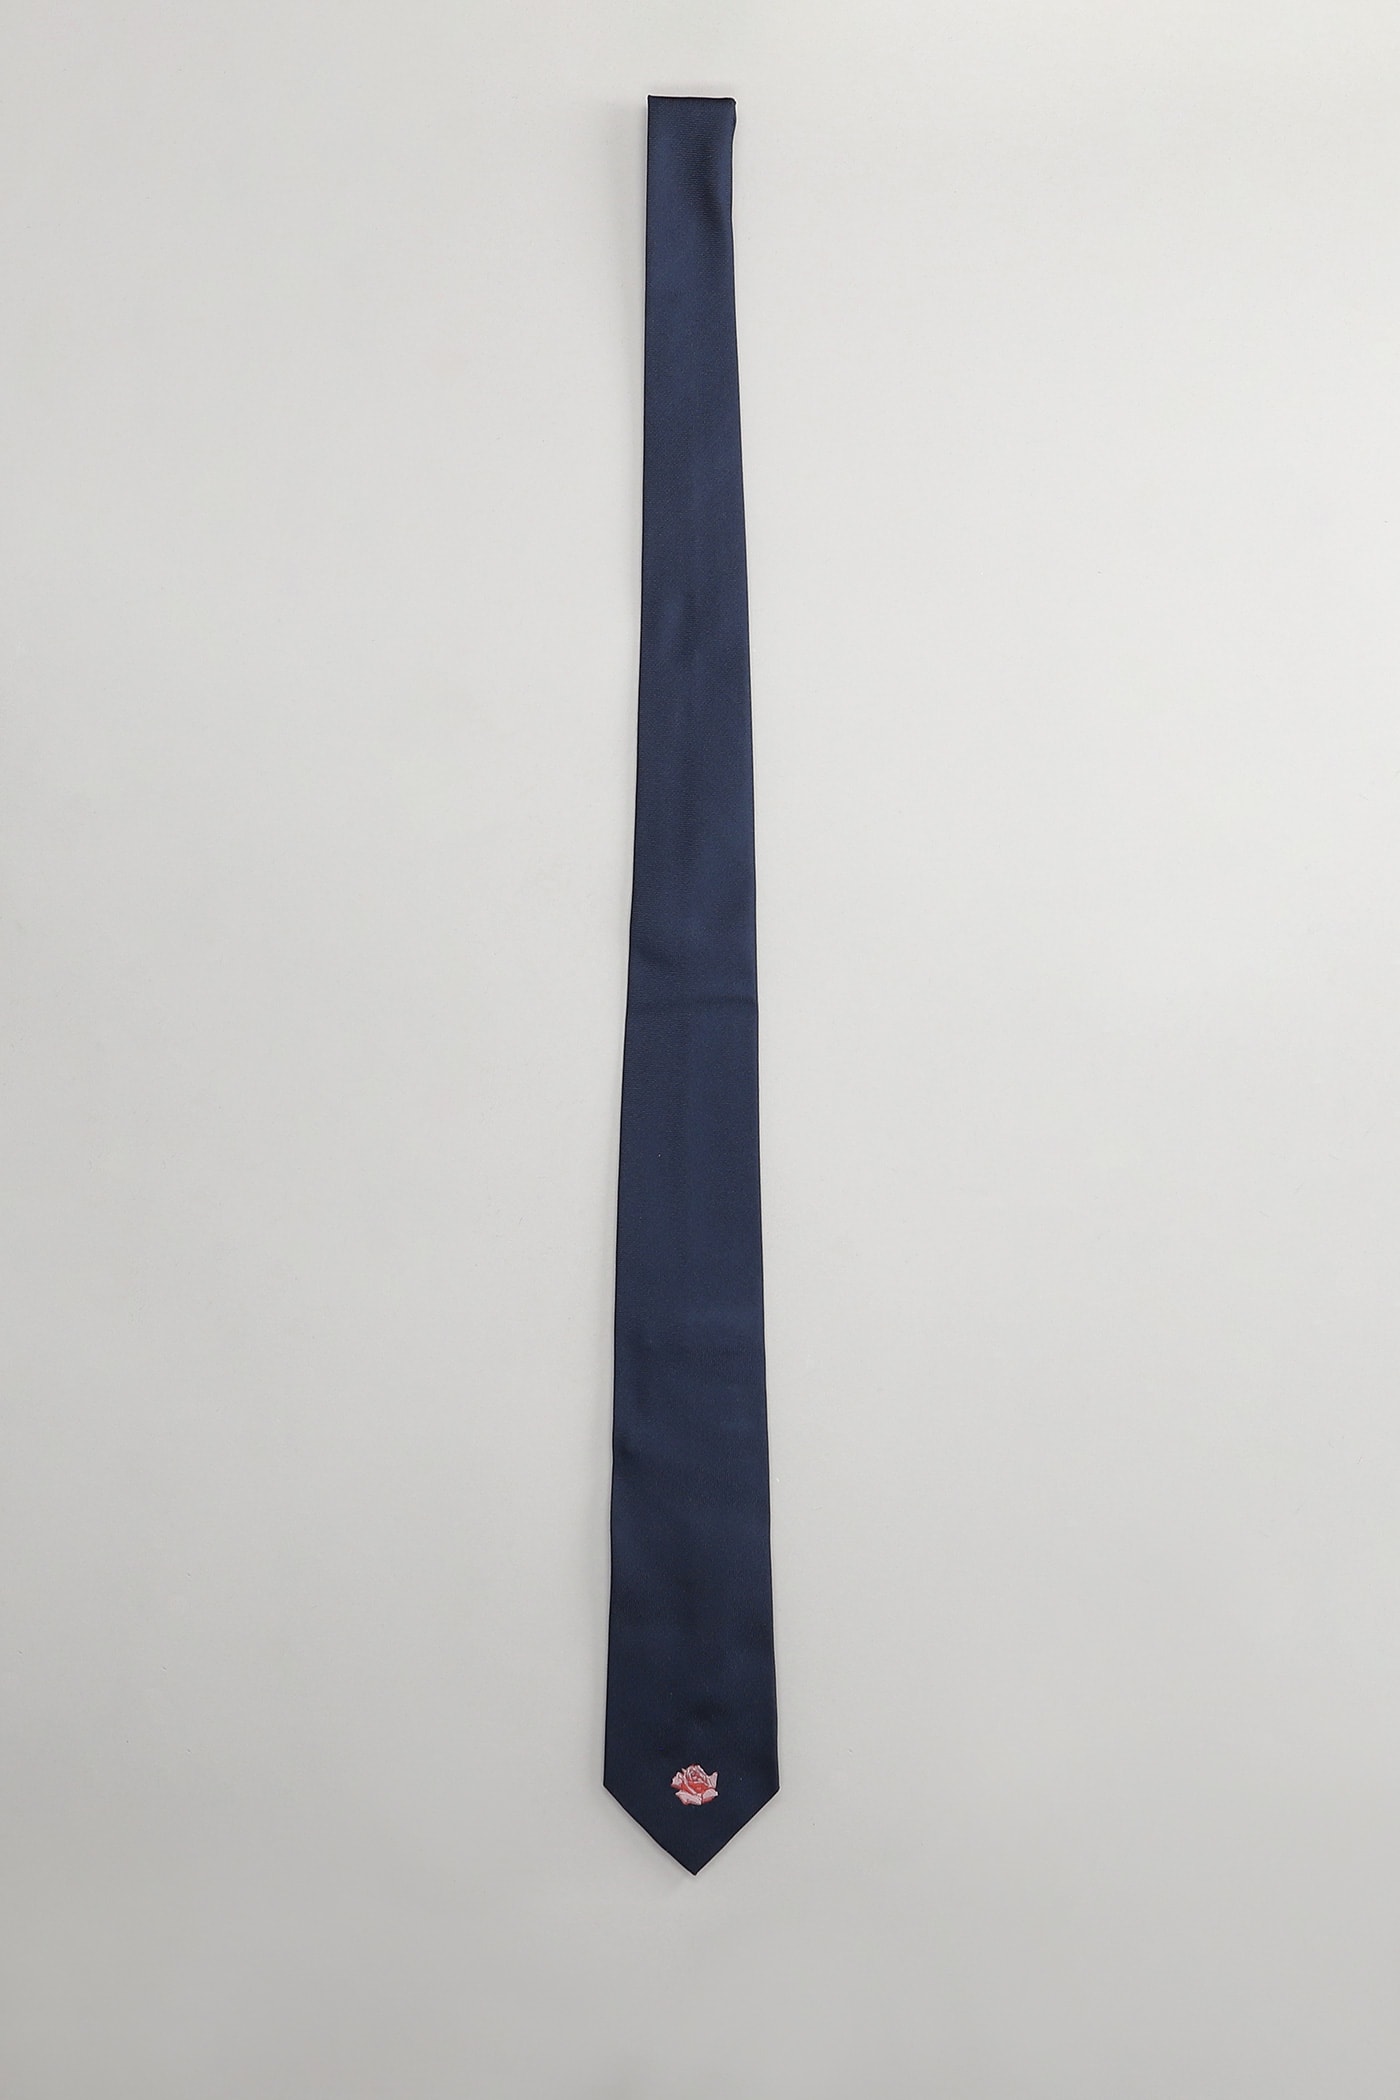 Kenzo Tie In Blue Silk